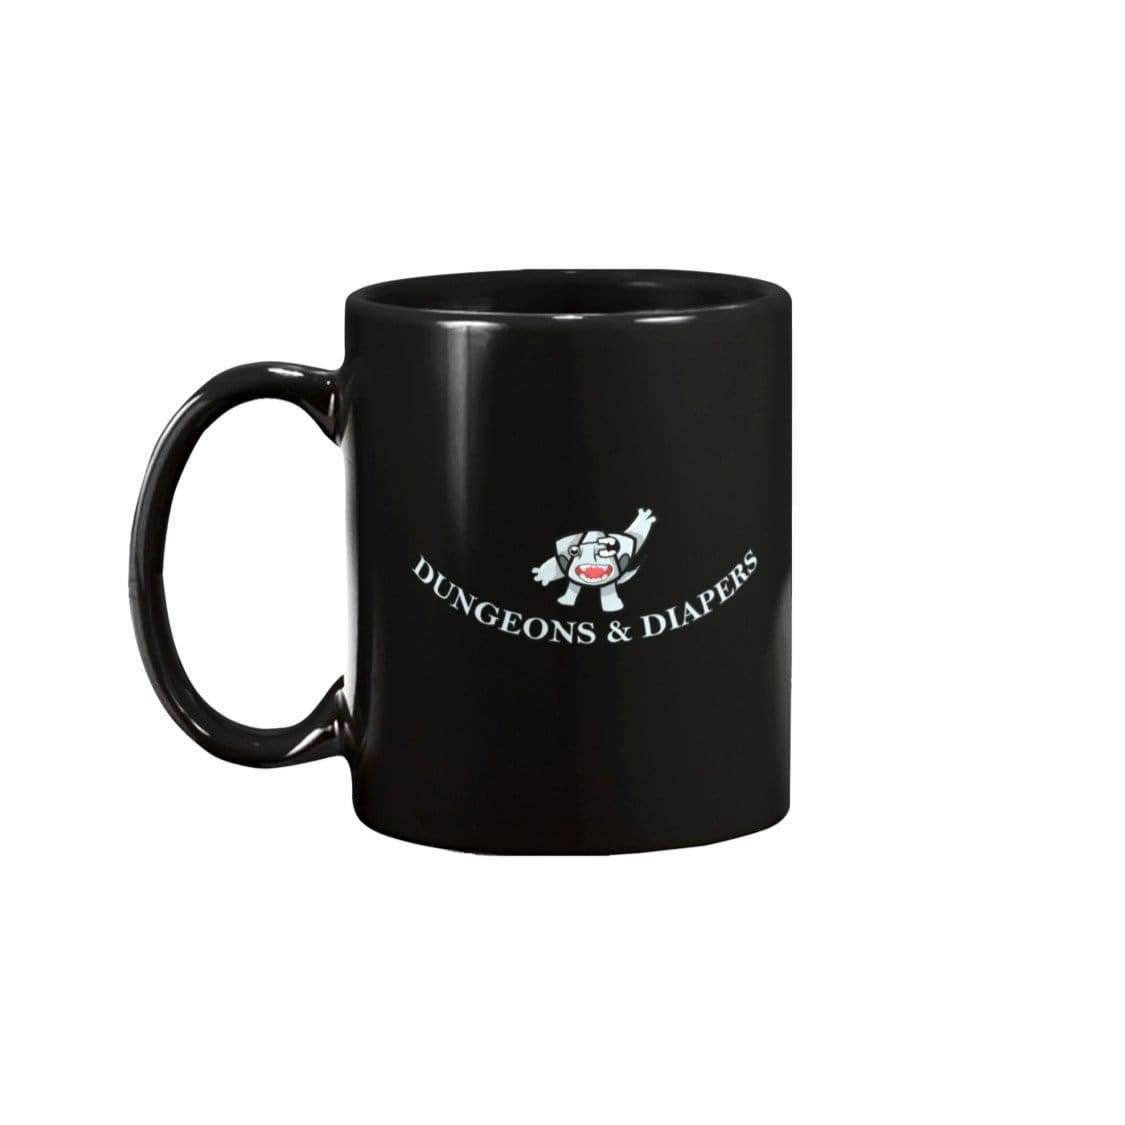 Dungeons & Diapers 15oz Coffee Mug - Black / 15OZ - Mugs